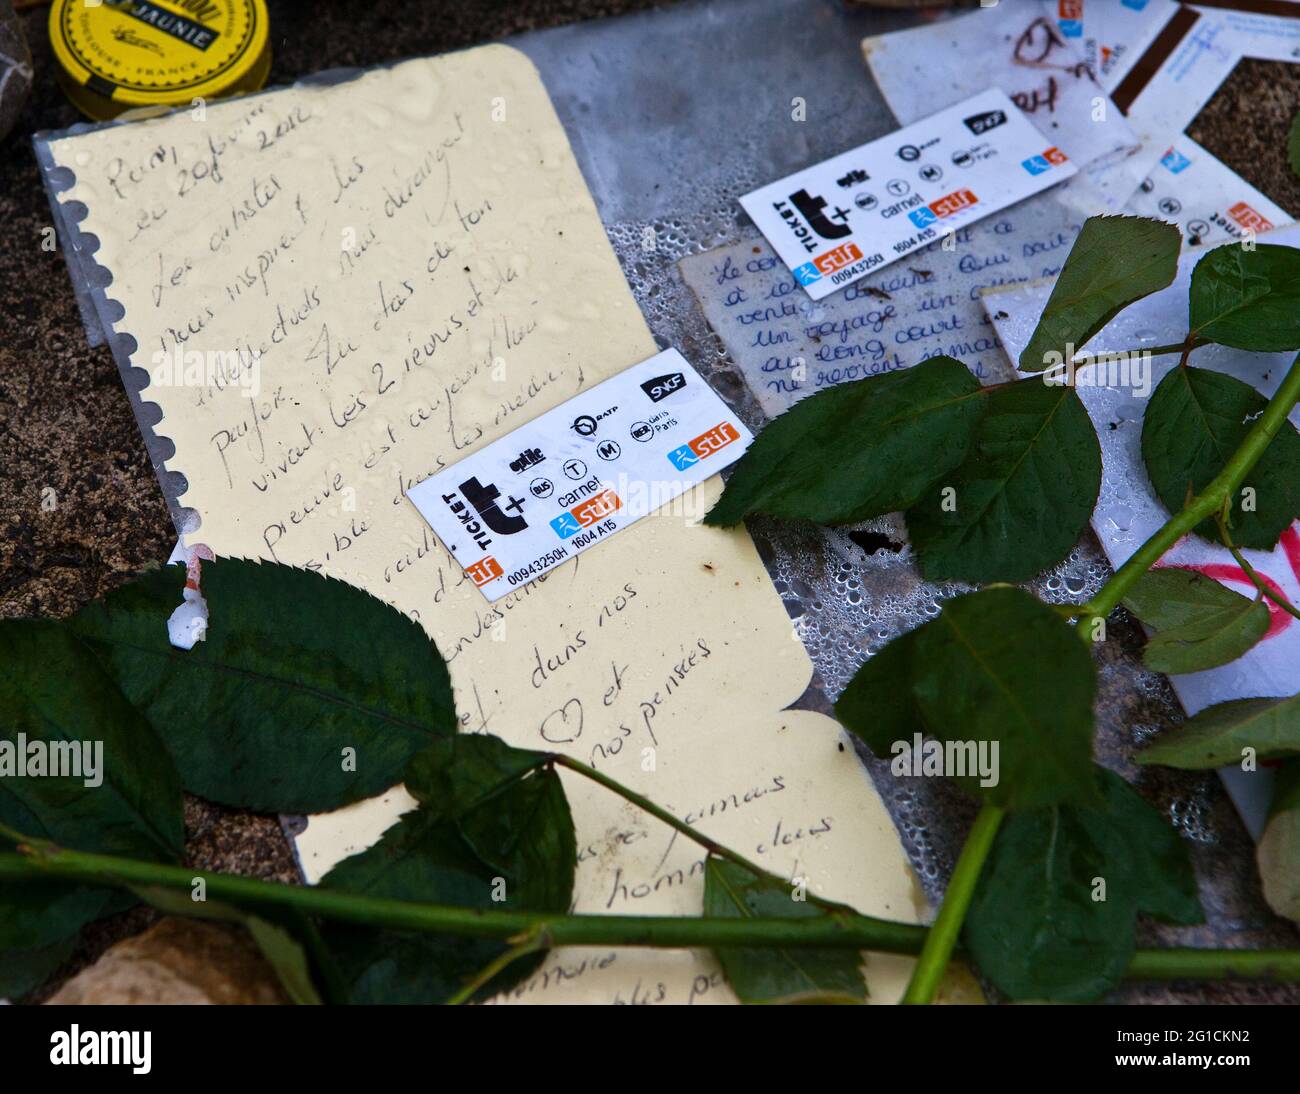 Grab des Dichters und Sängers Serge Gainsbourg, - Fans hinterlassen U-Bahn-Tickets als Referenz zu seinem berühmtesten französischen Lied. Stockfoto